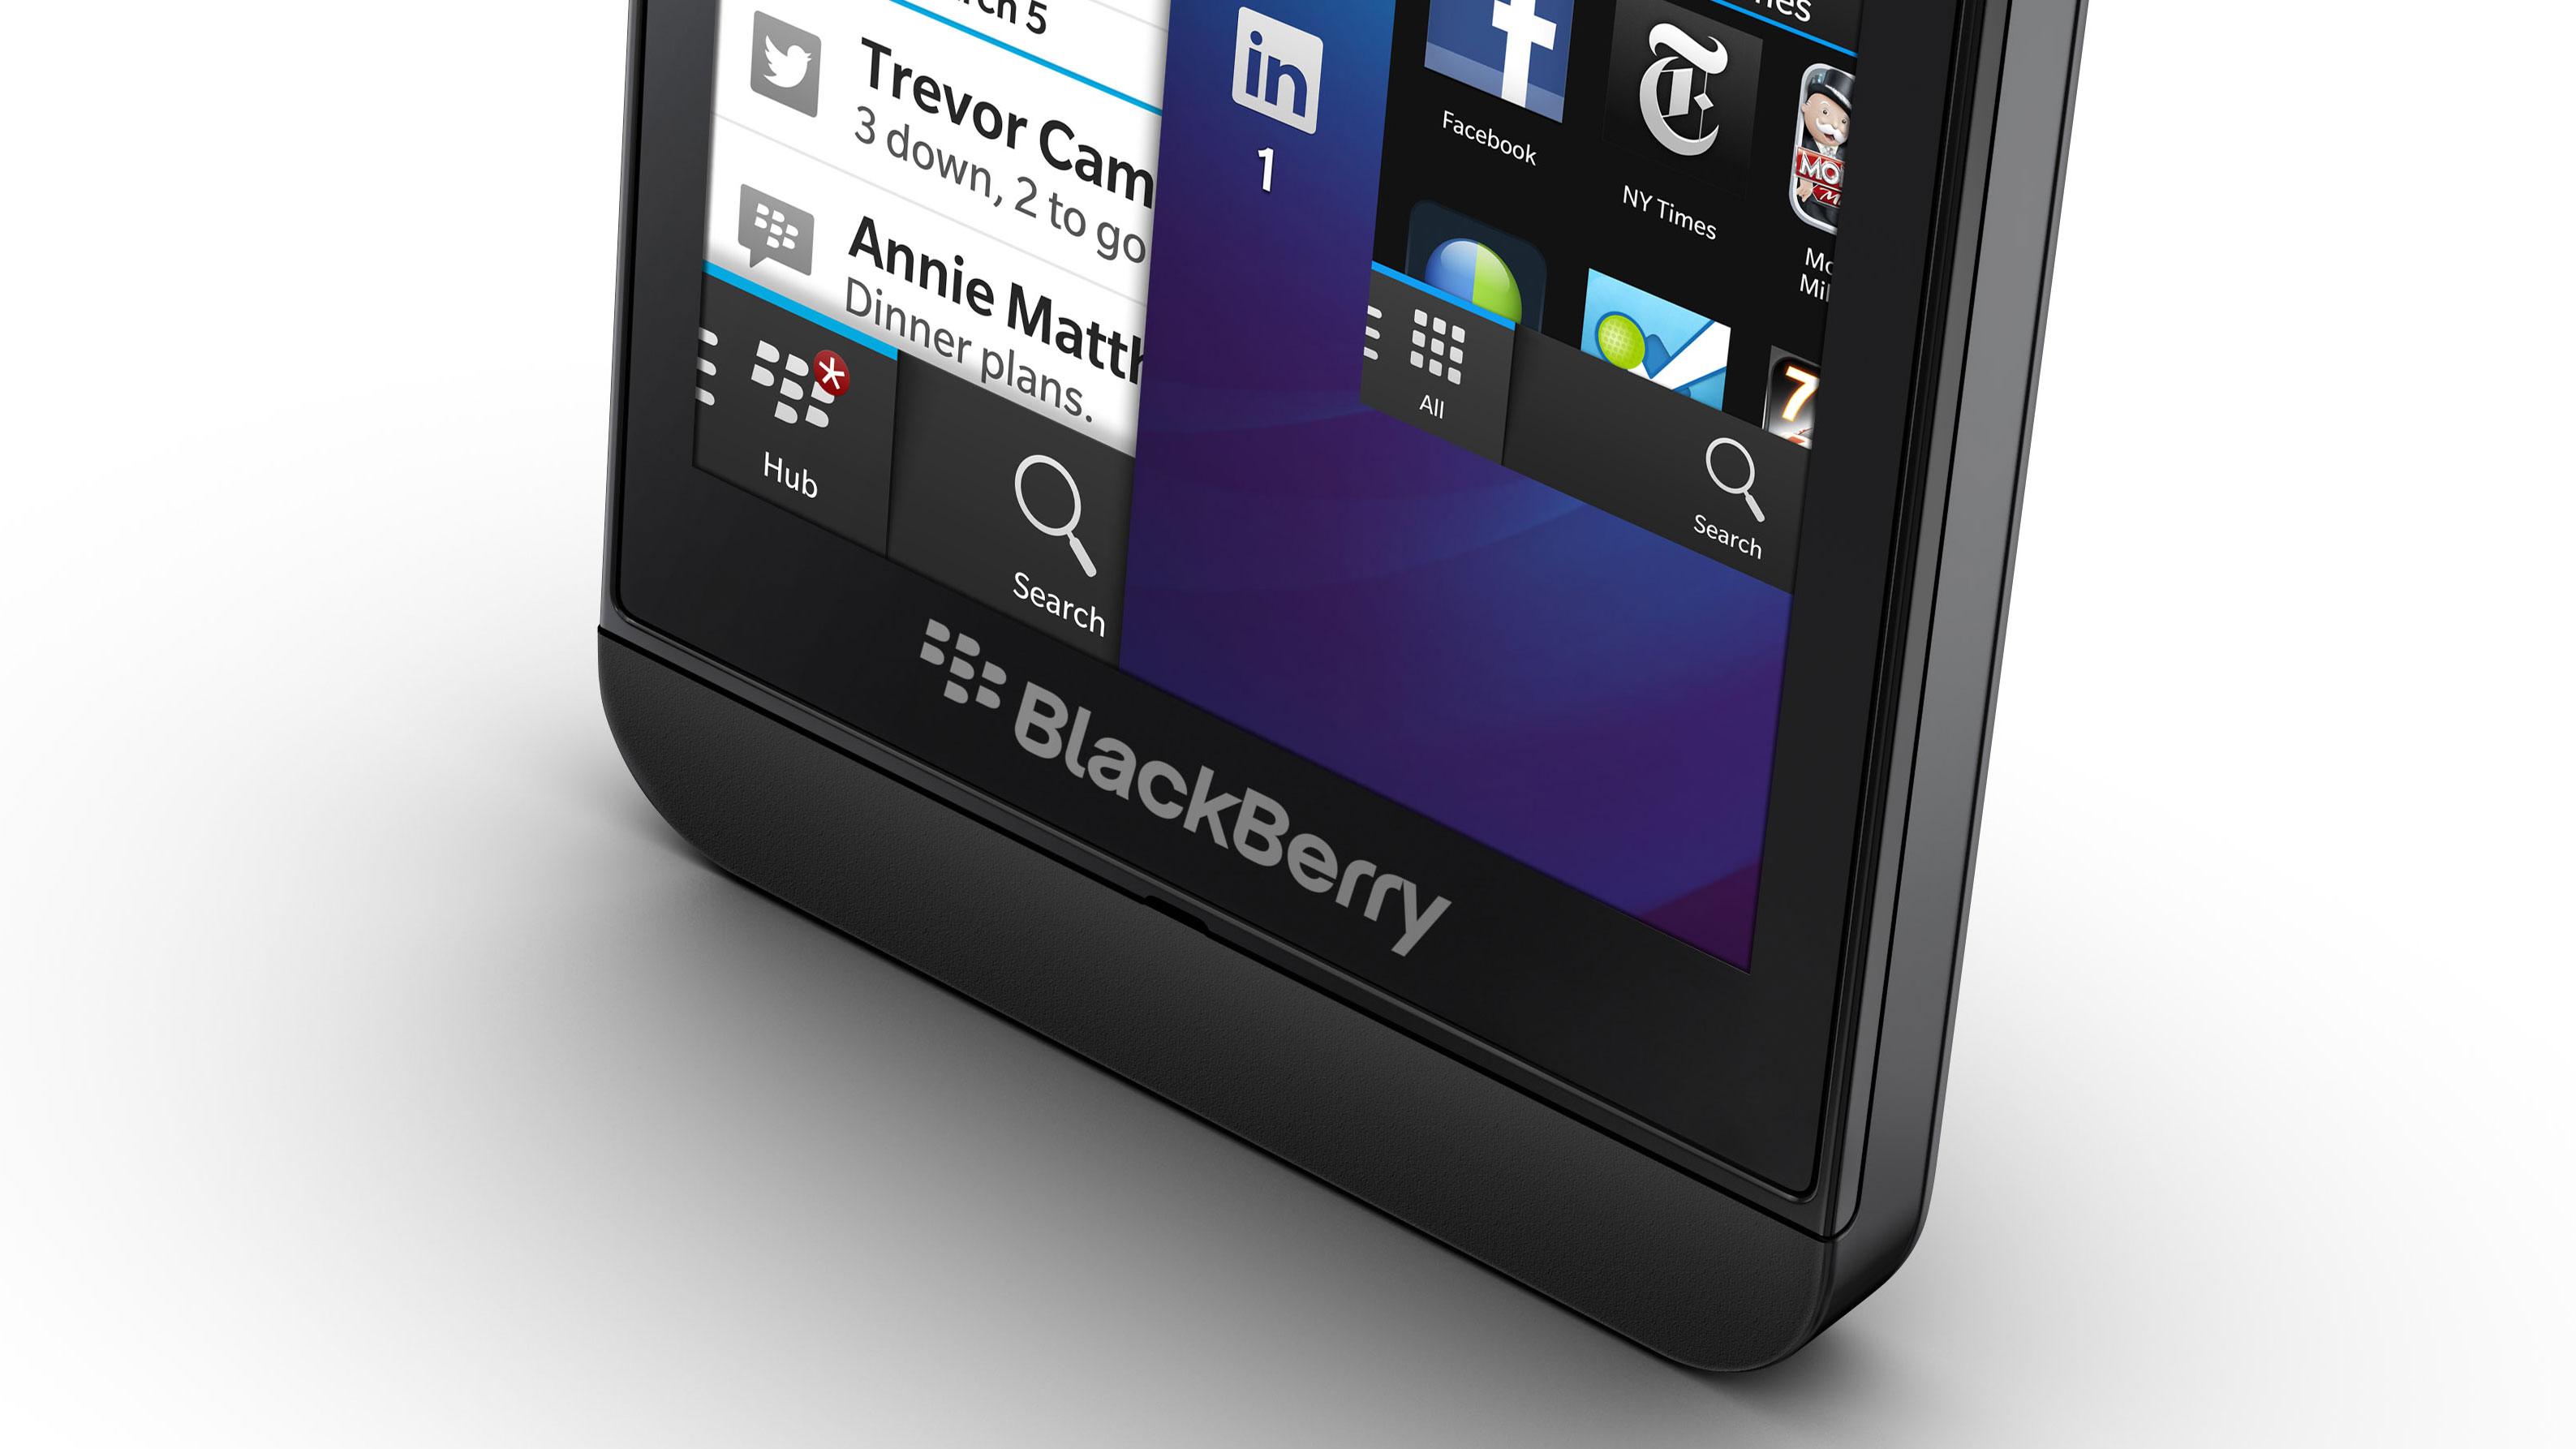 blackberry z10 keyboard review